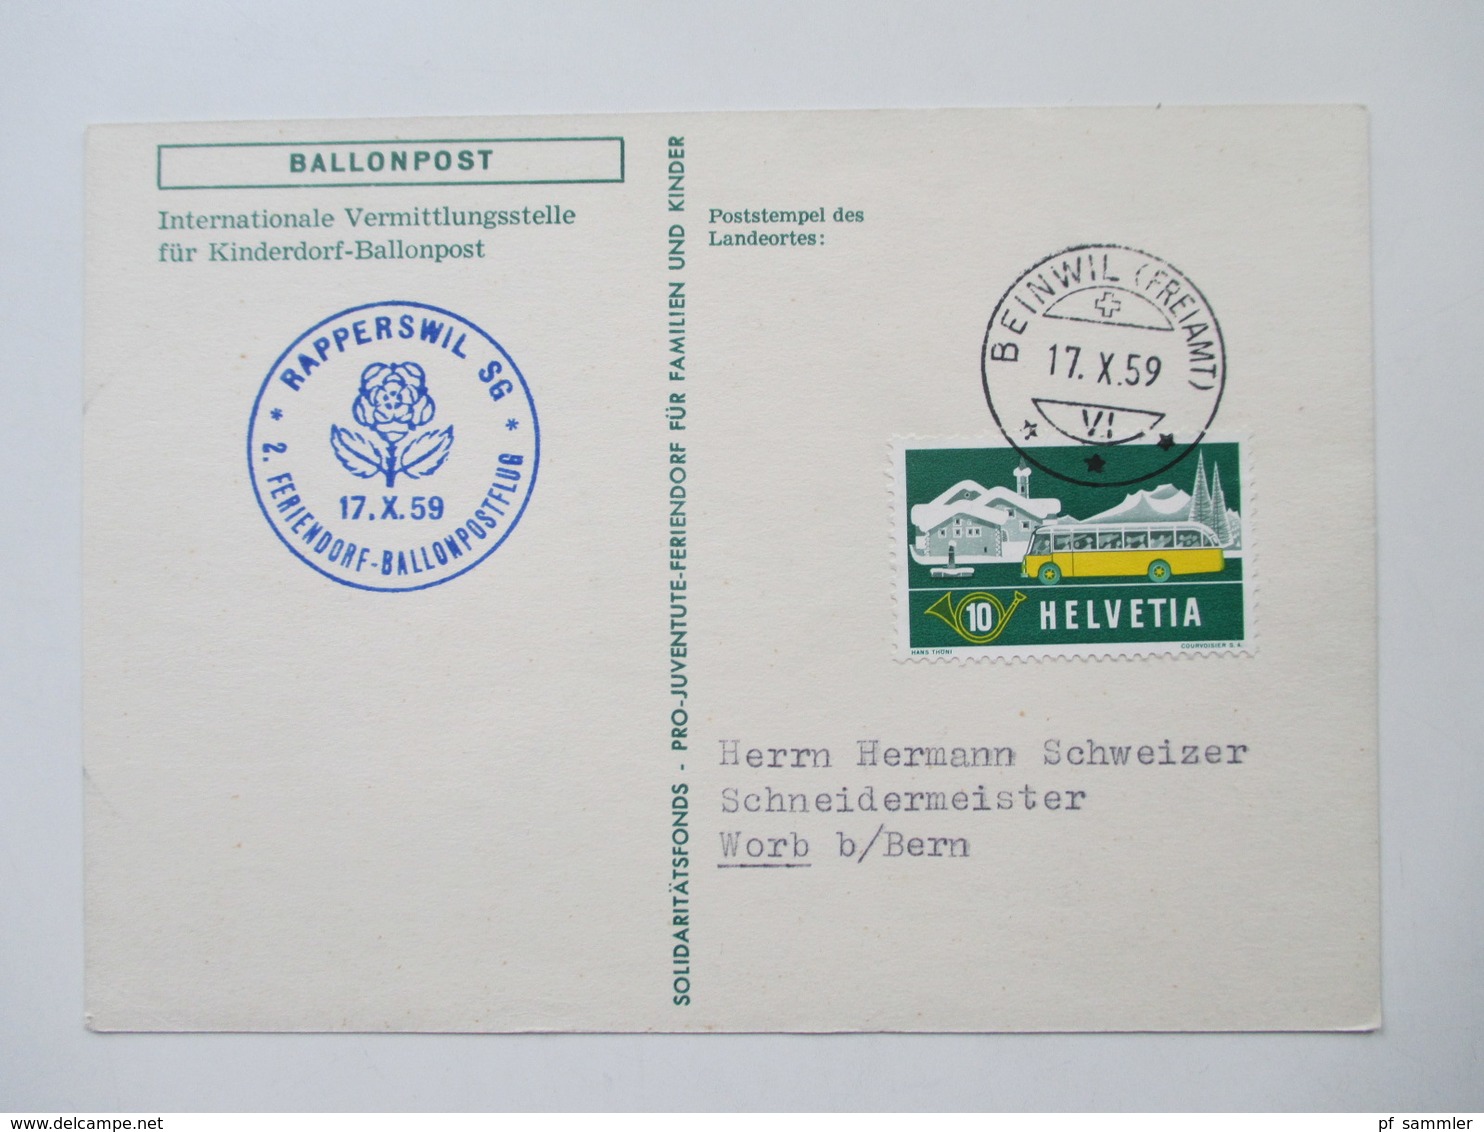 Ballonpost 1959 - 65 Schweiz Circus Knie usw. und 1x Österreich 1975 Private Ballonkarten Flüge. Schöne Motive